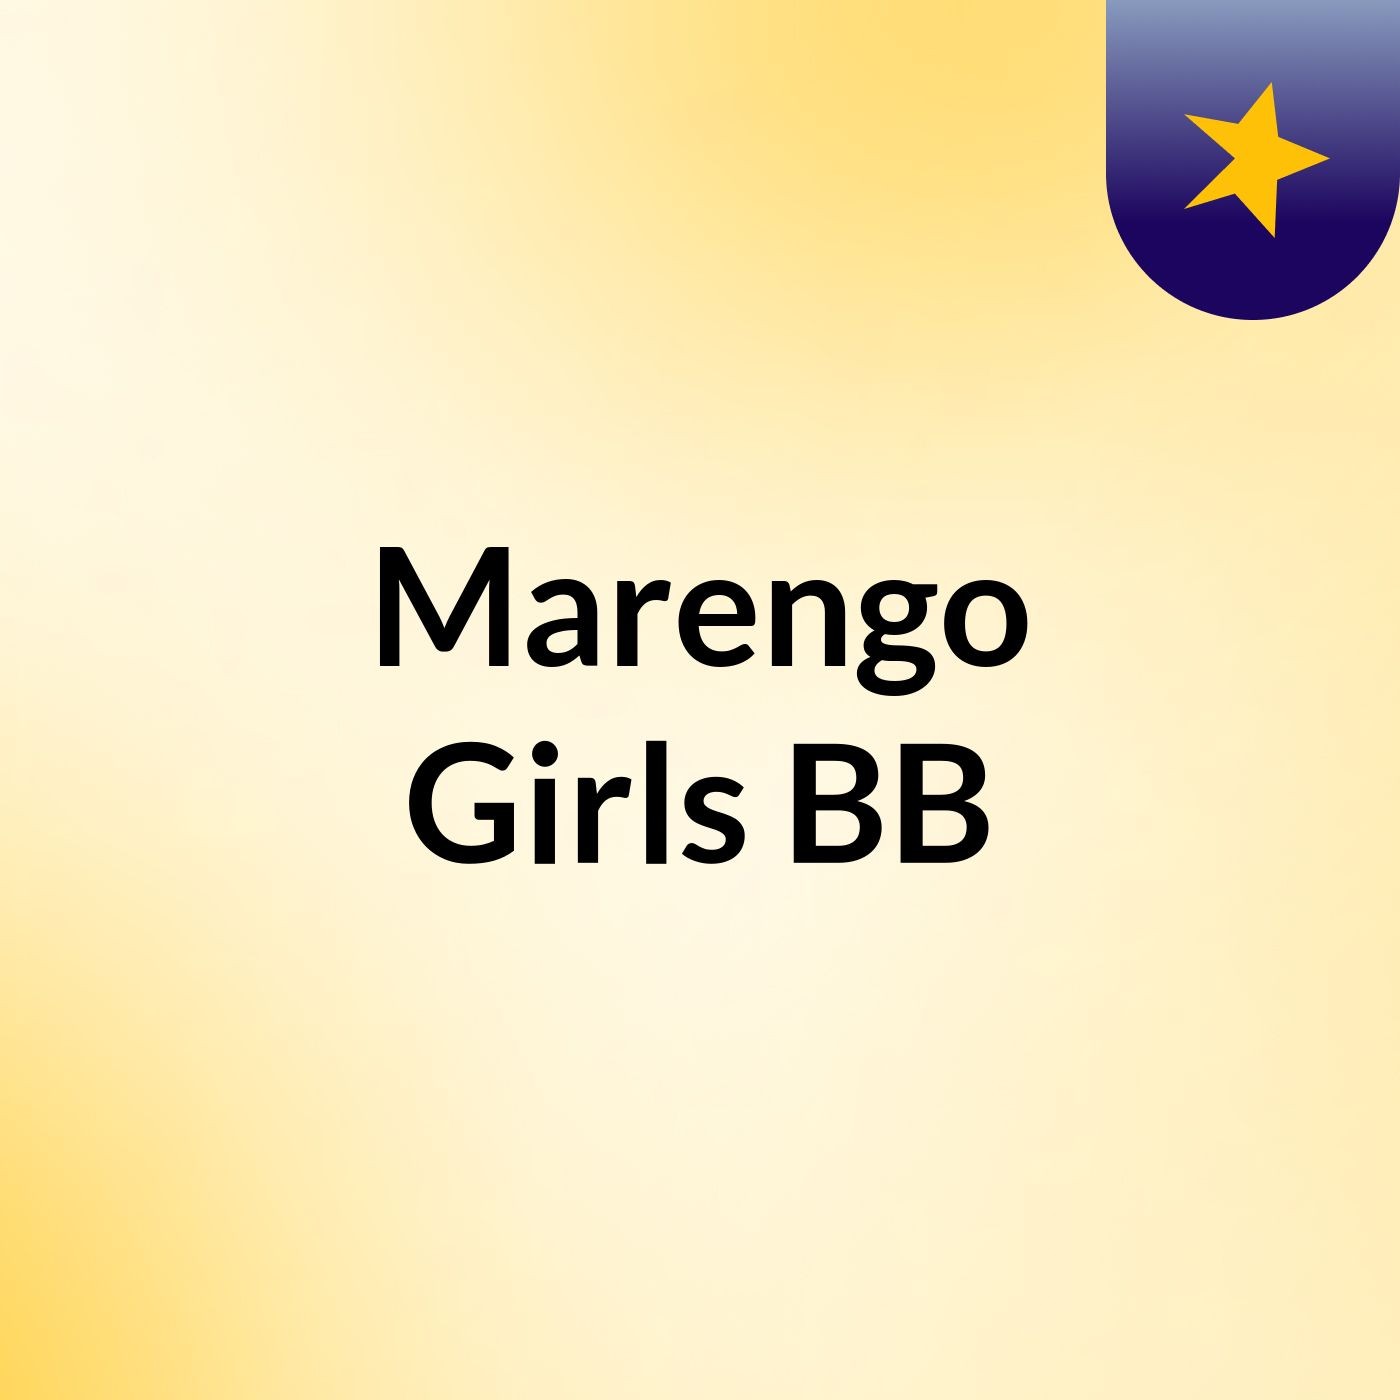 Marengo Gorls BB 02/14/2019